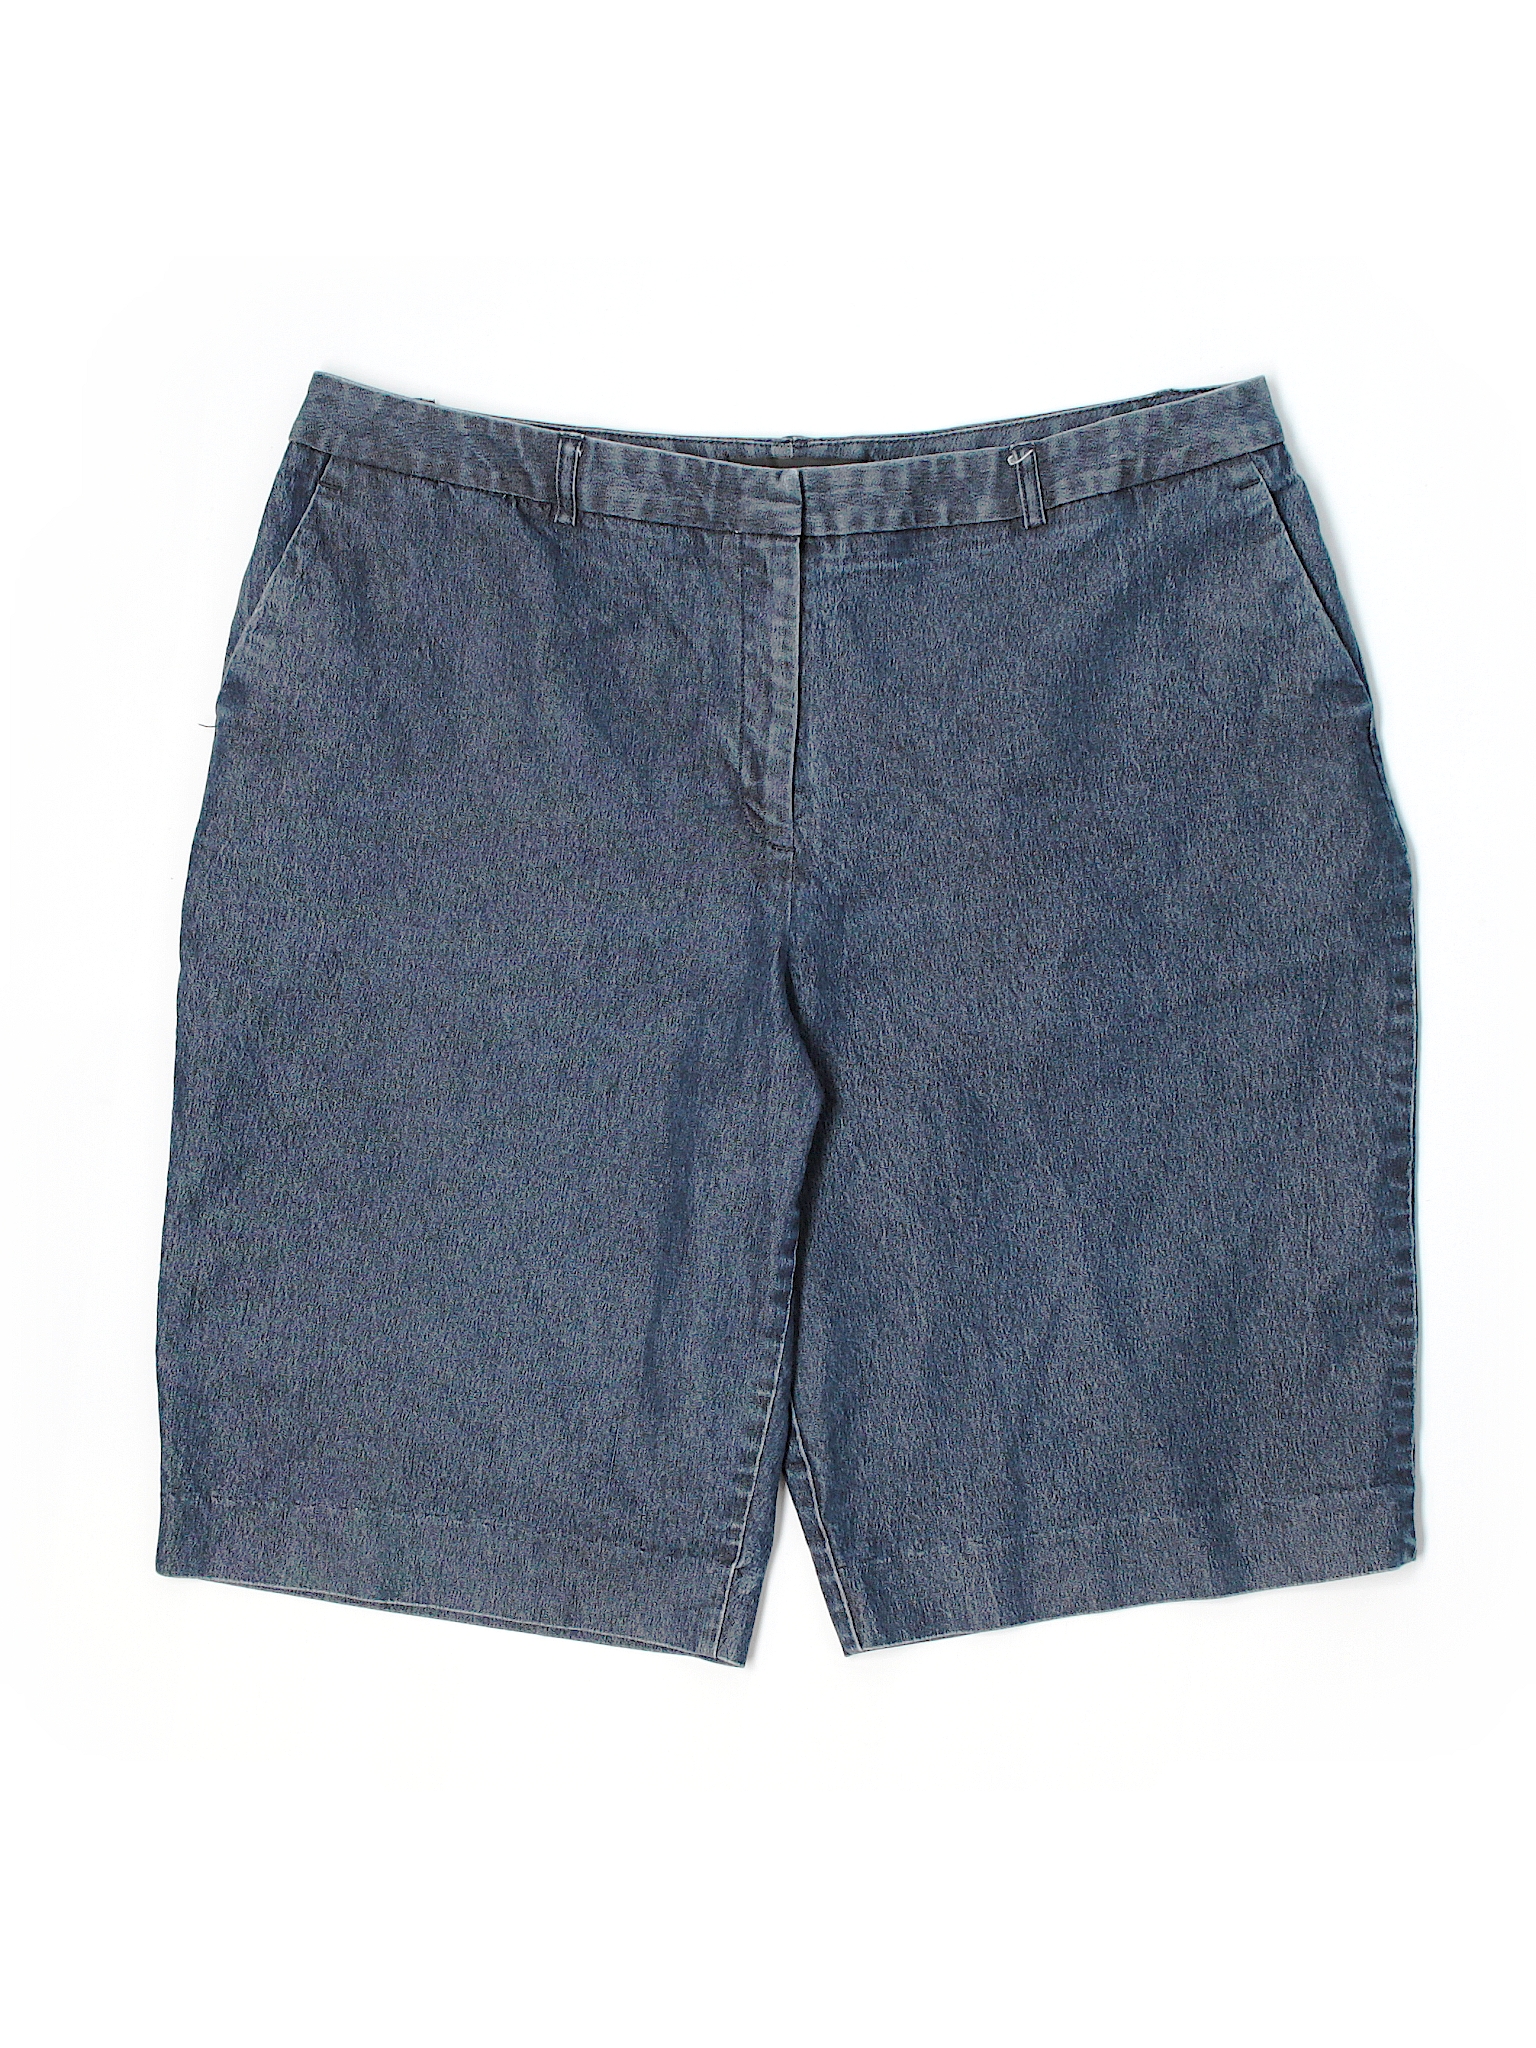 Josephine Chaus Navy Blue Denim Shorts Size 14 (Plus) - 71% off | thredUP